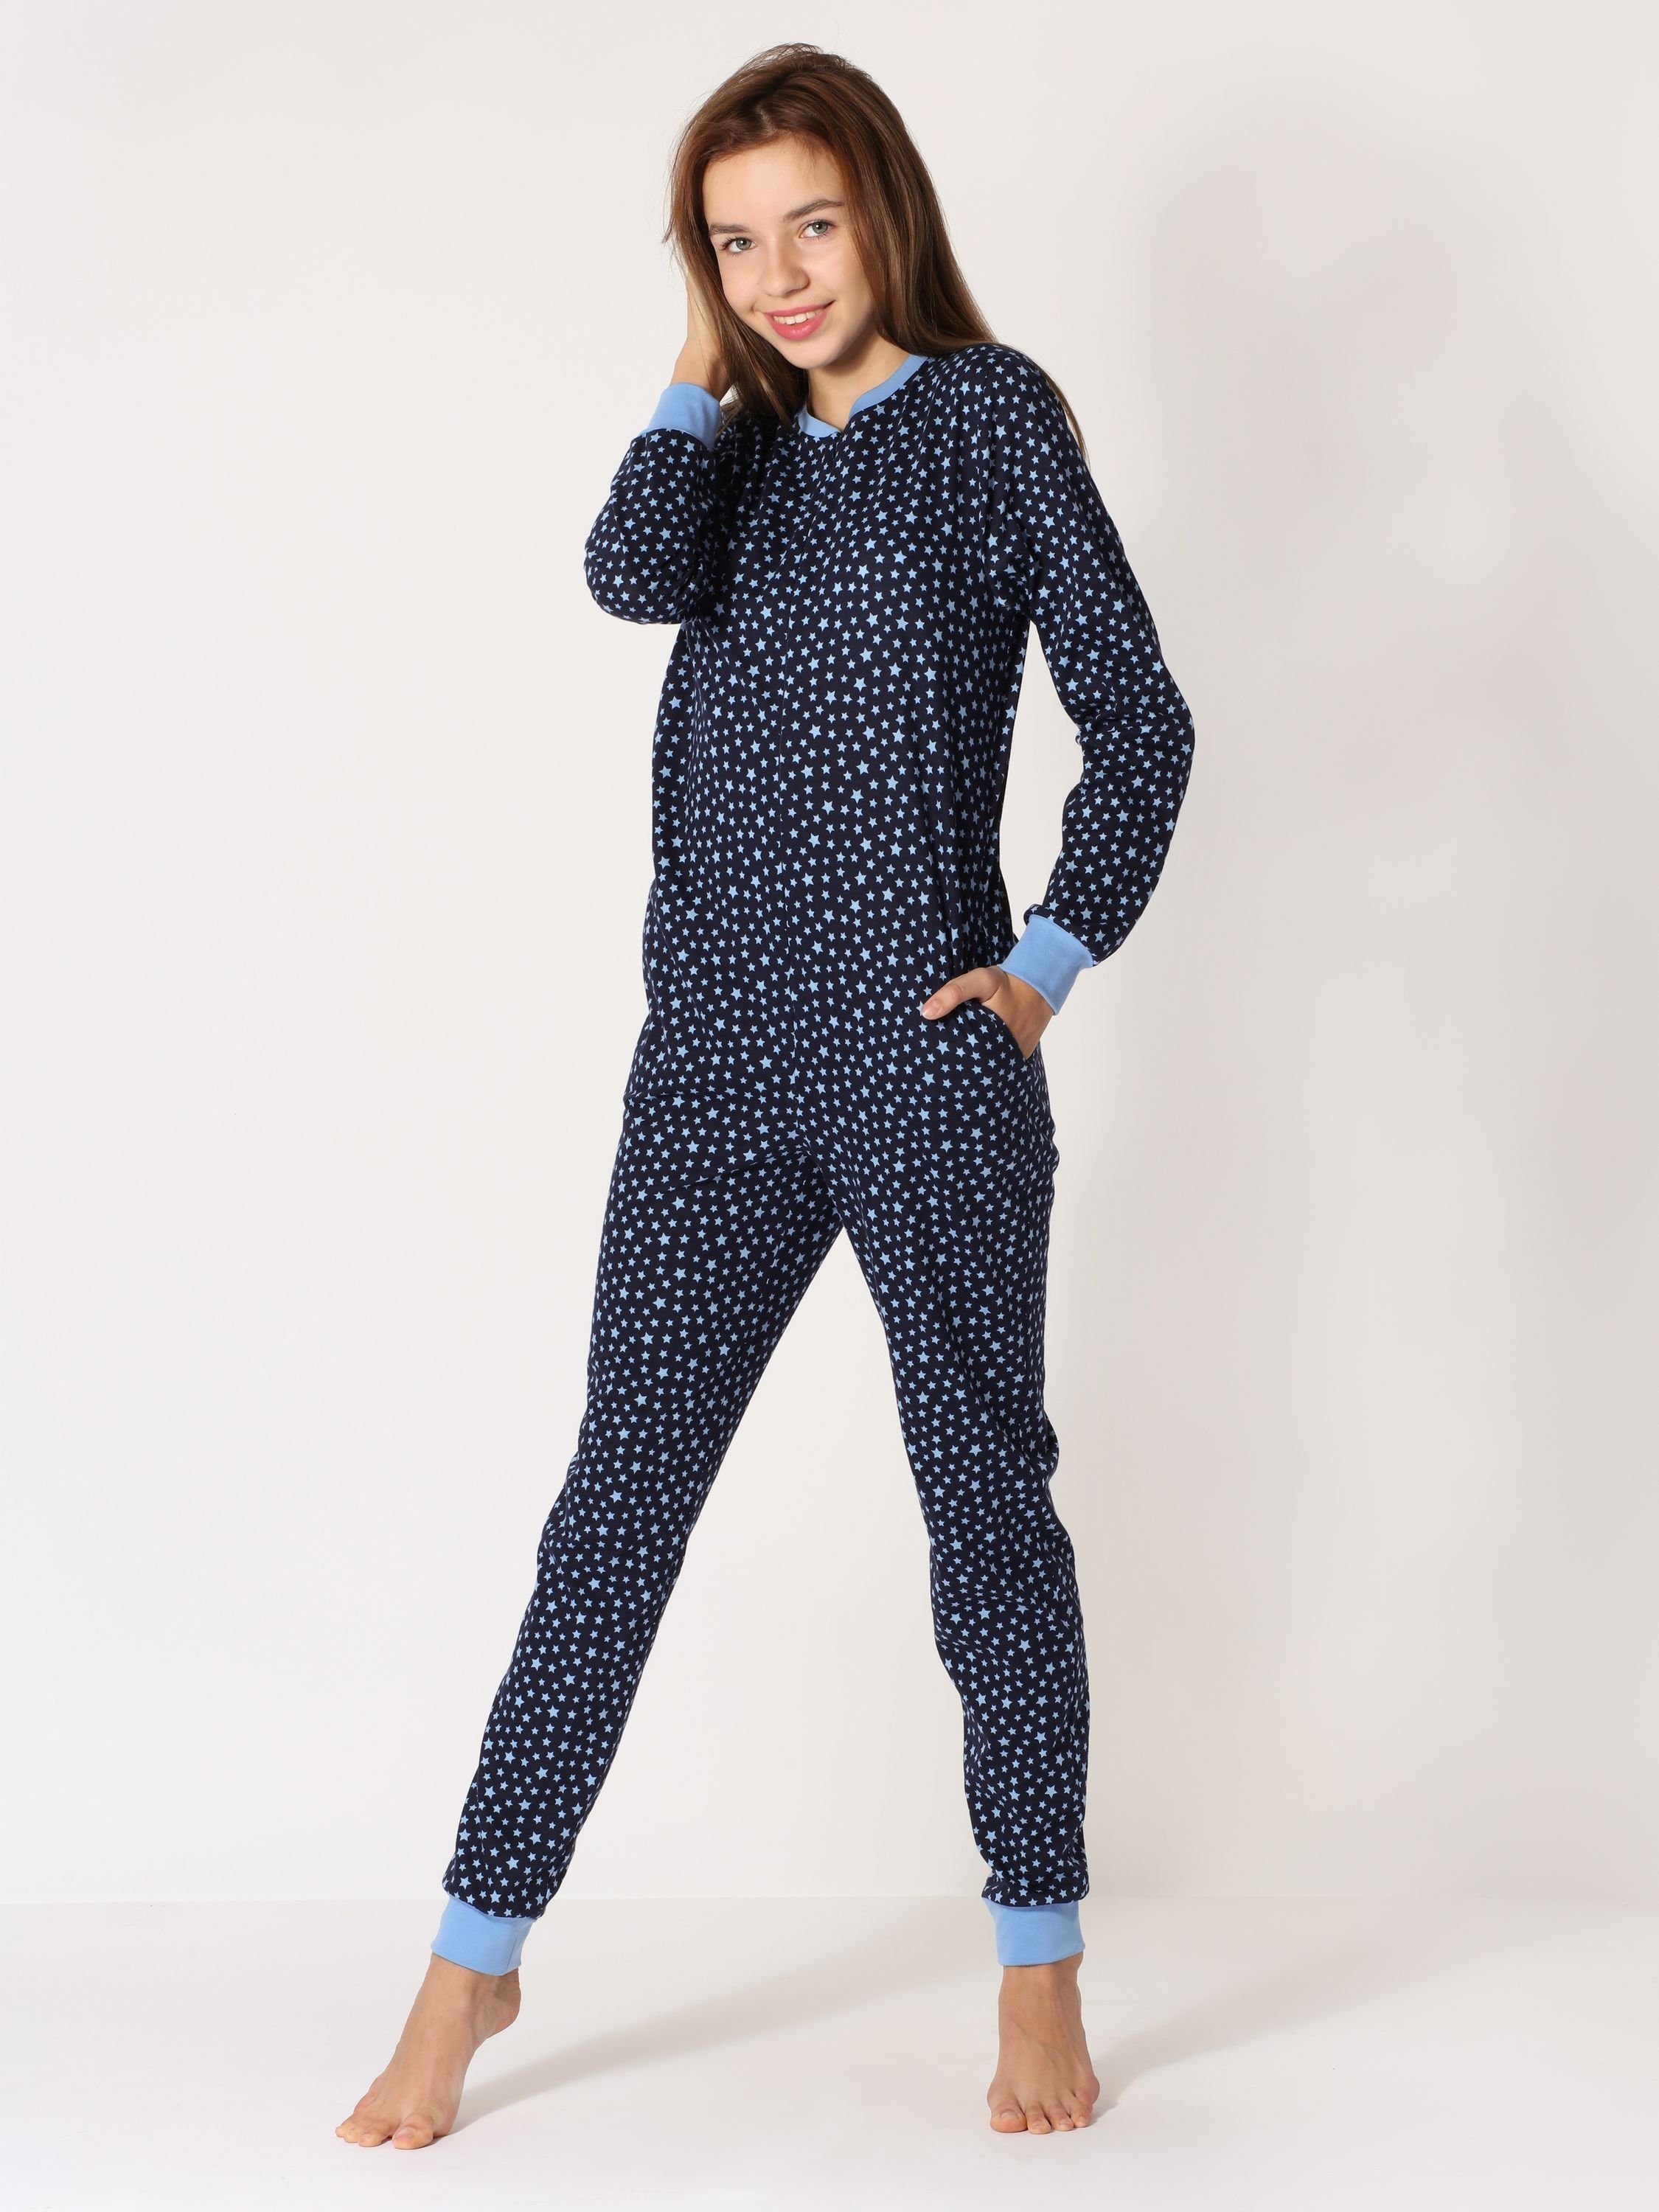 Style Schlafoverall Blau/Sterne Merry Mädchen MS10-235 Schlafanzug Jugend Schlafanzug